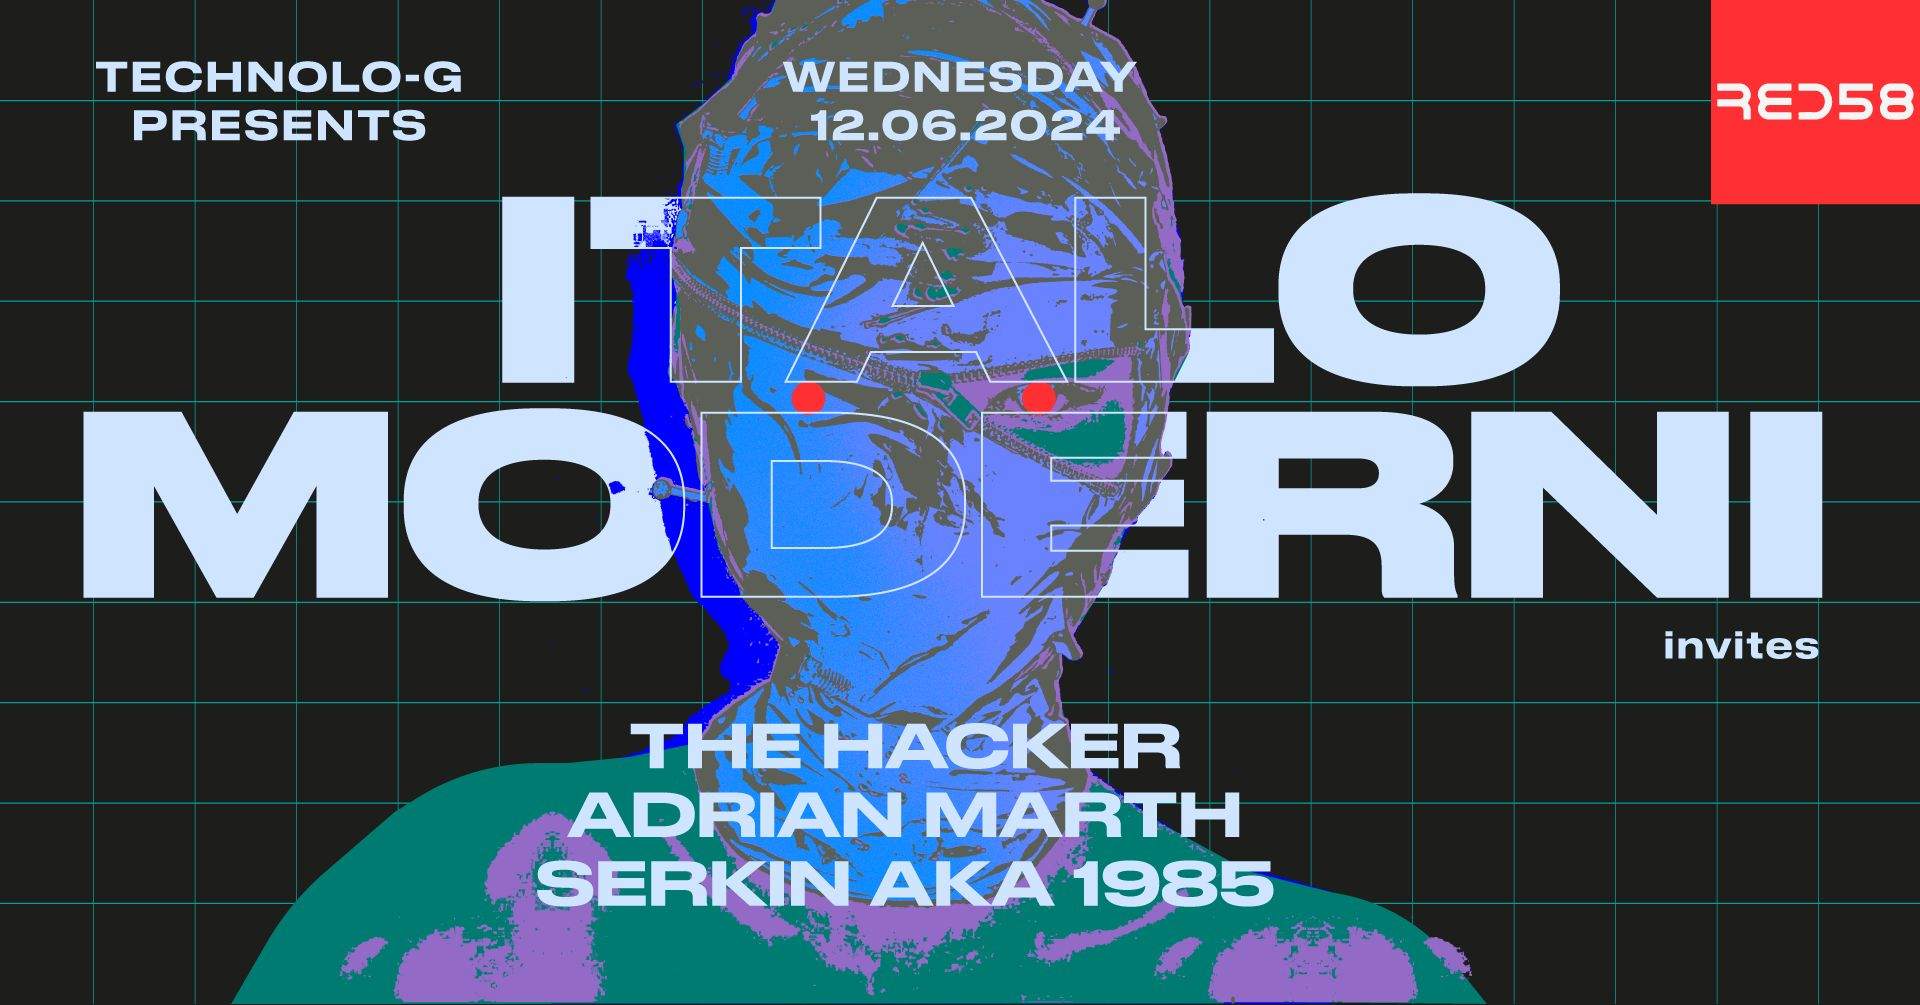 Technolo-G pres. Italo Moderni with The Hacker, Adrian Marth & Serkin aka 1985 - フライヤー表